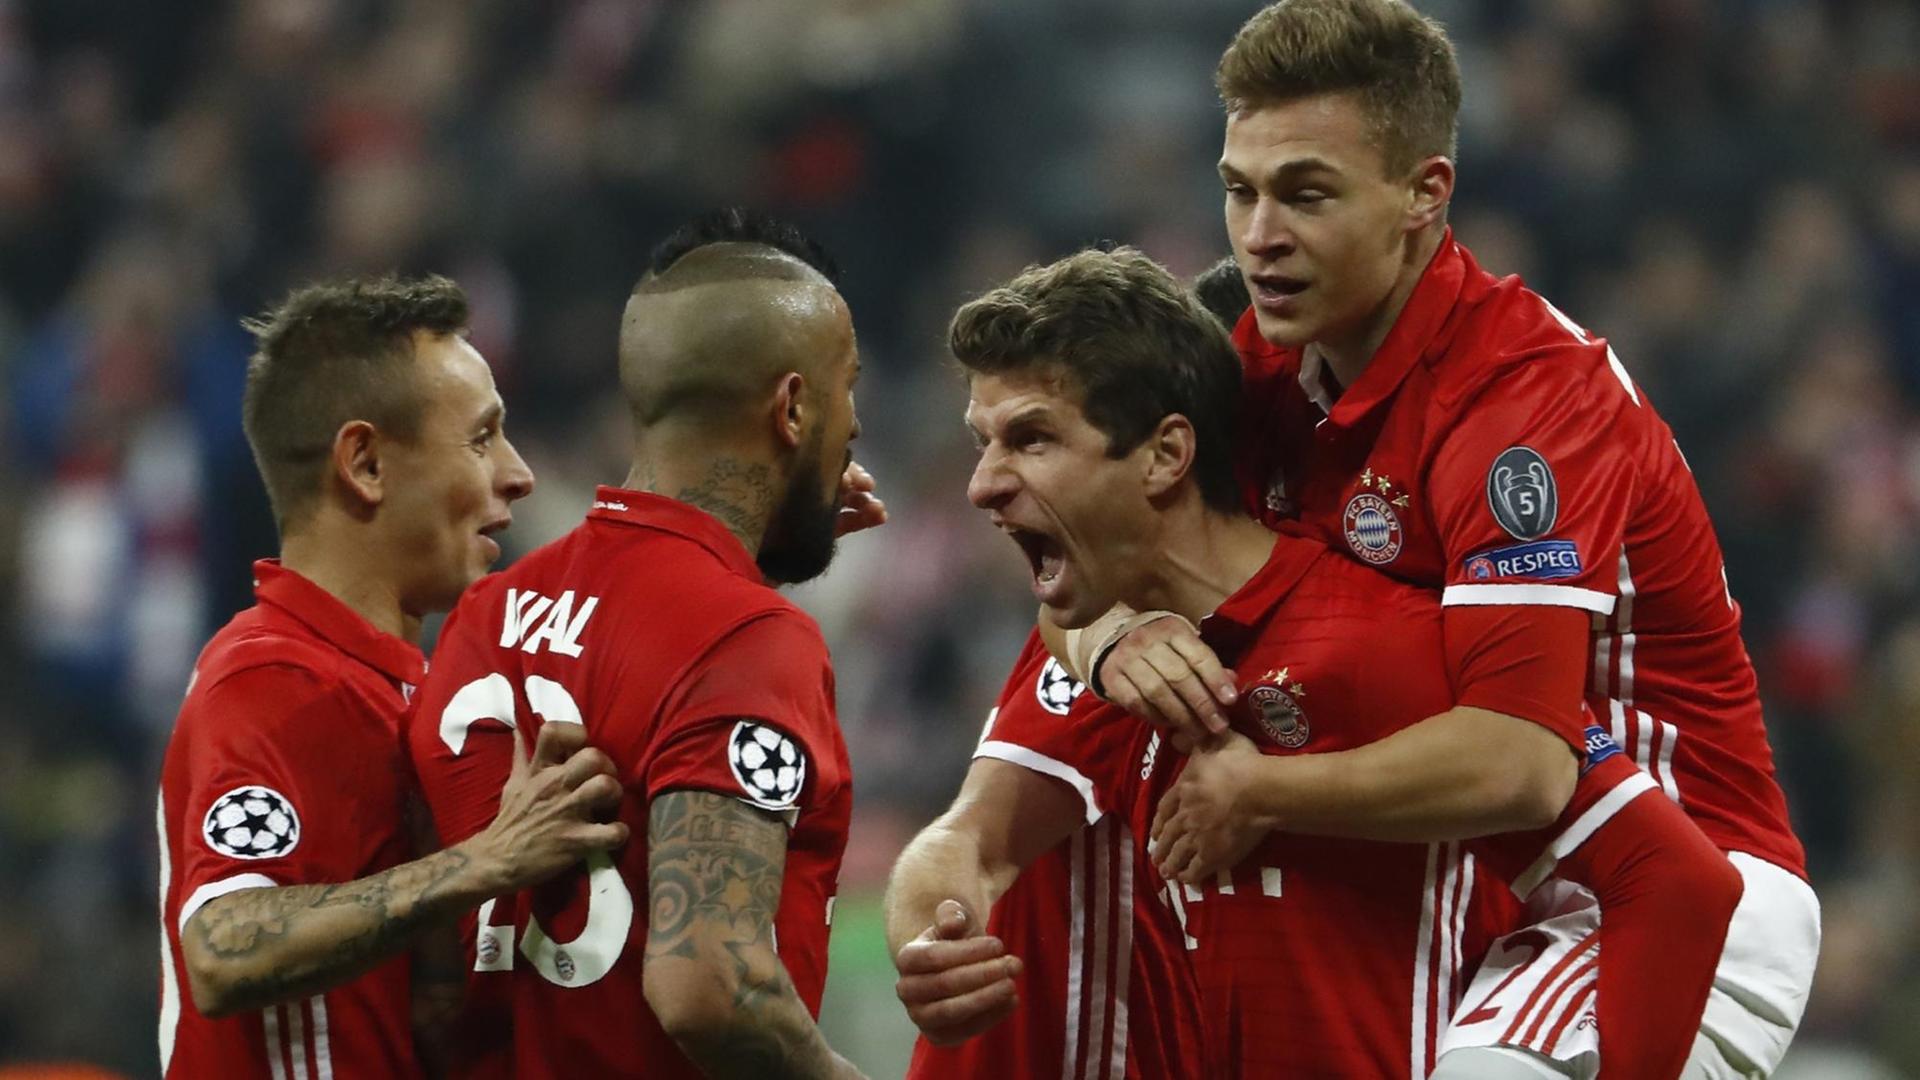 Der Bayern-Spieler Thomas Müller freut sich mit anderen Spielern über sein Tor gegen den FC Arsenal.